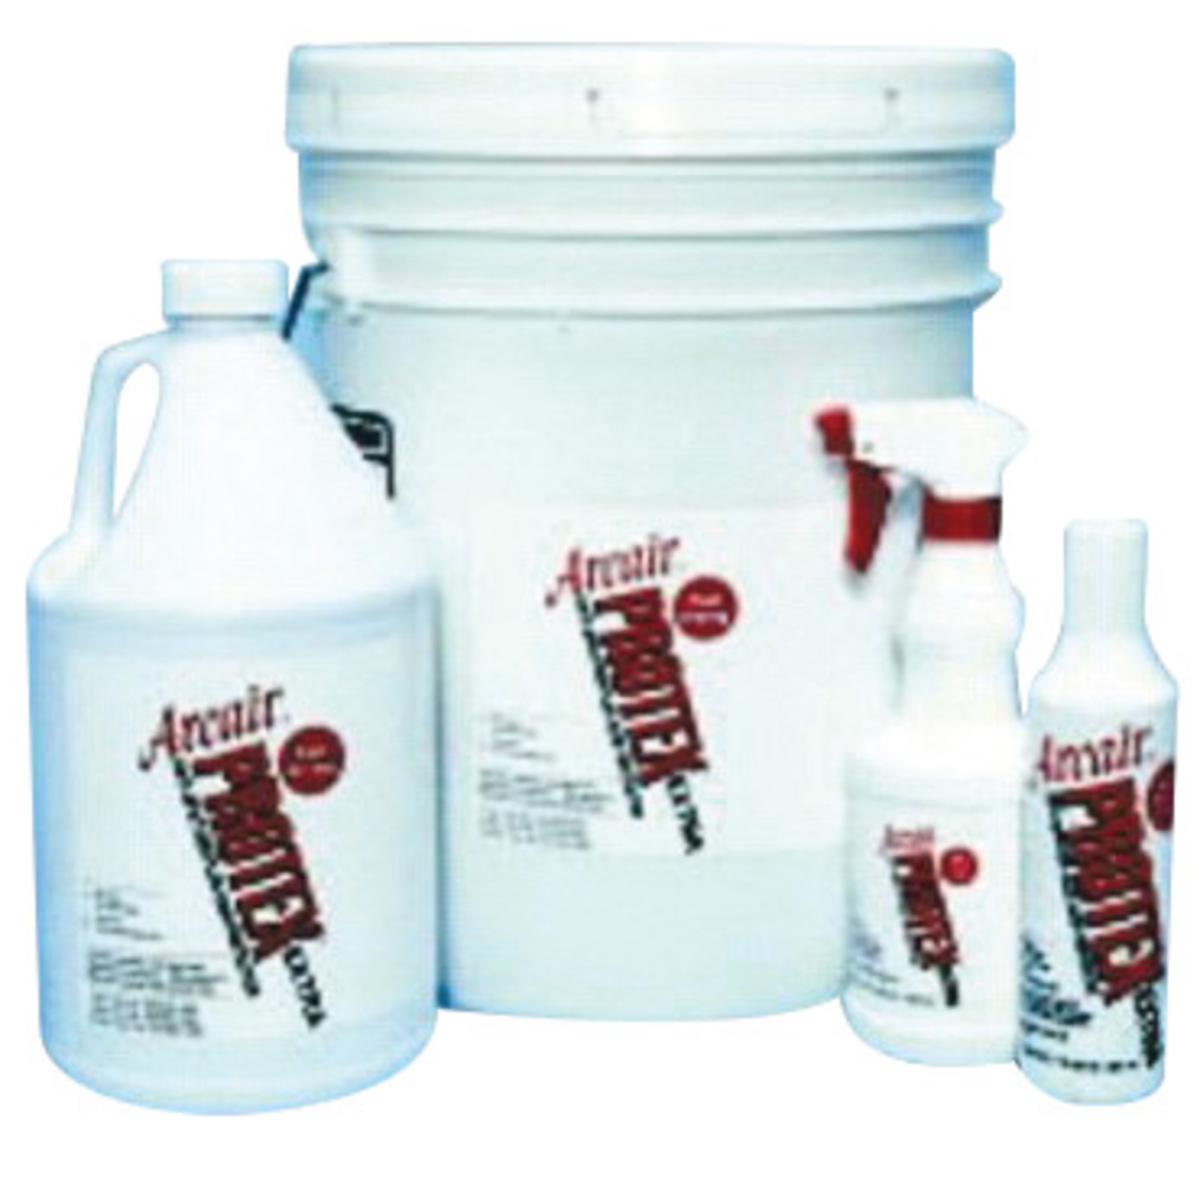 Buy Antikal Spray (750ml) cheaply